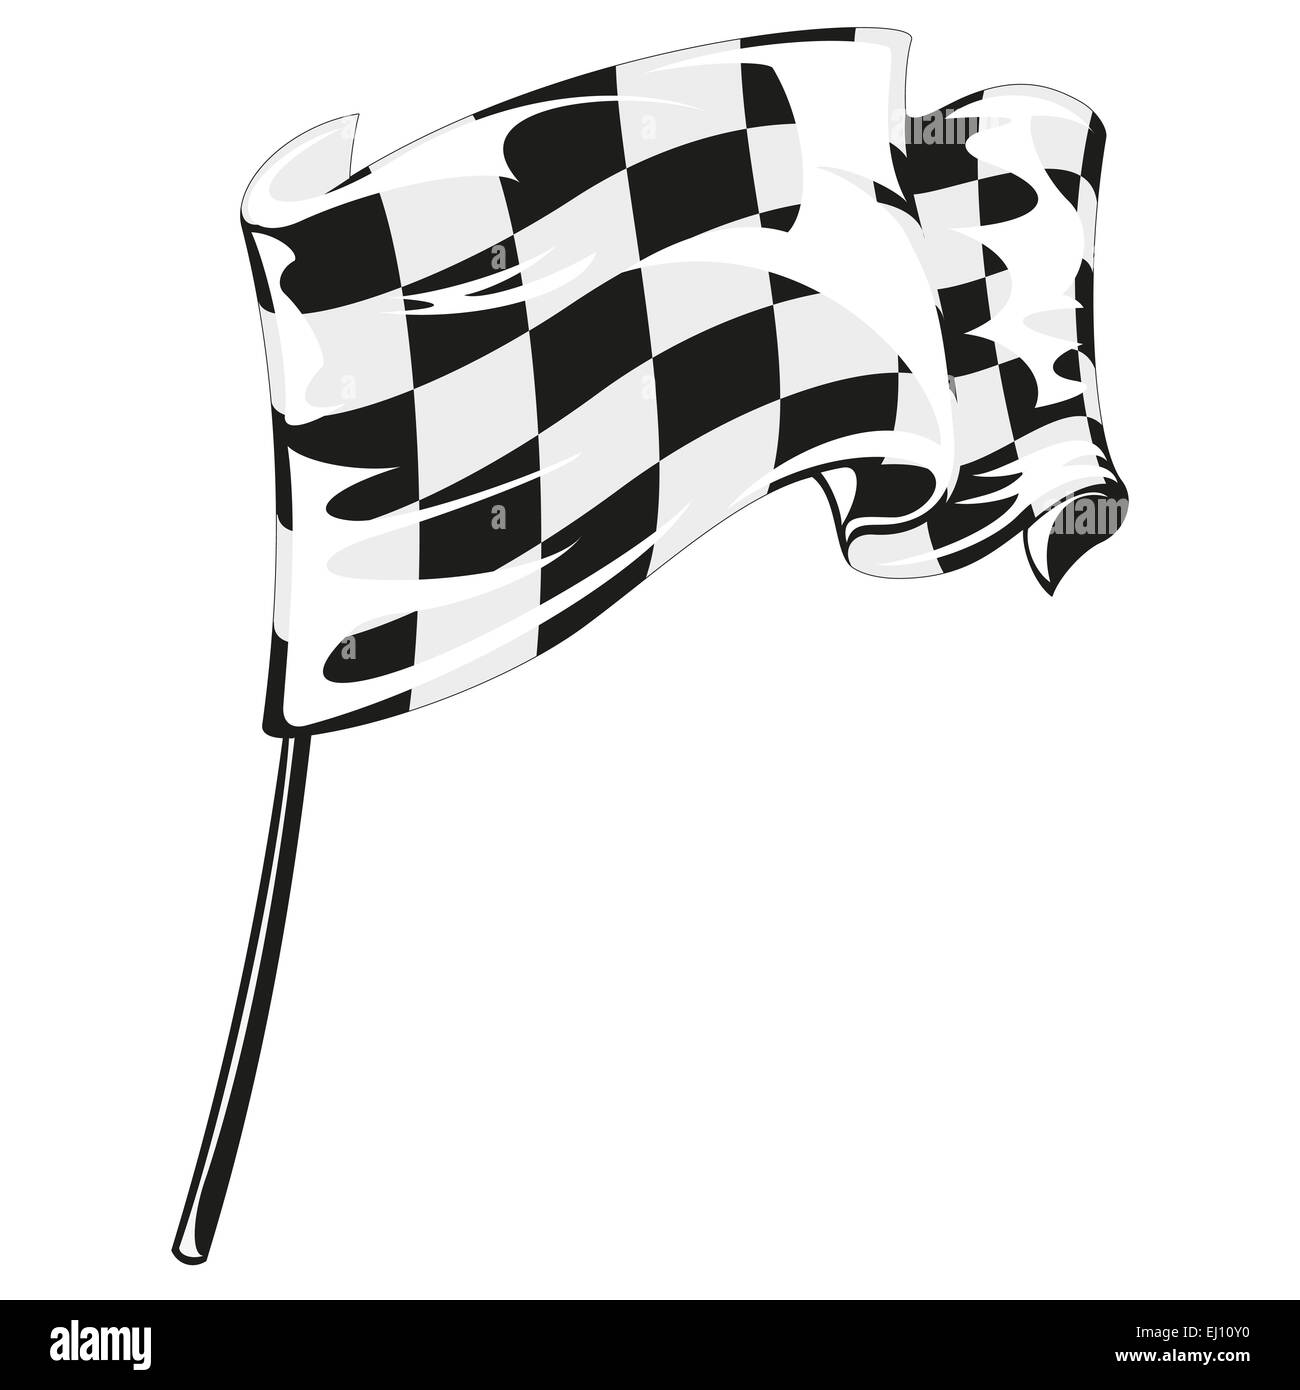 checkered flag racing Stock Photo - Alamy